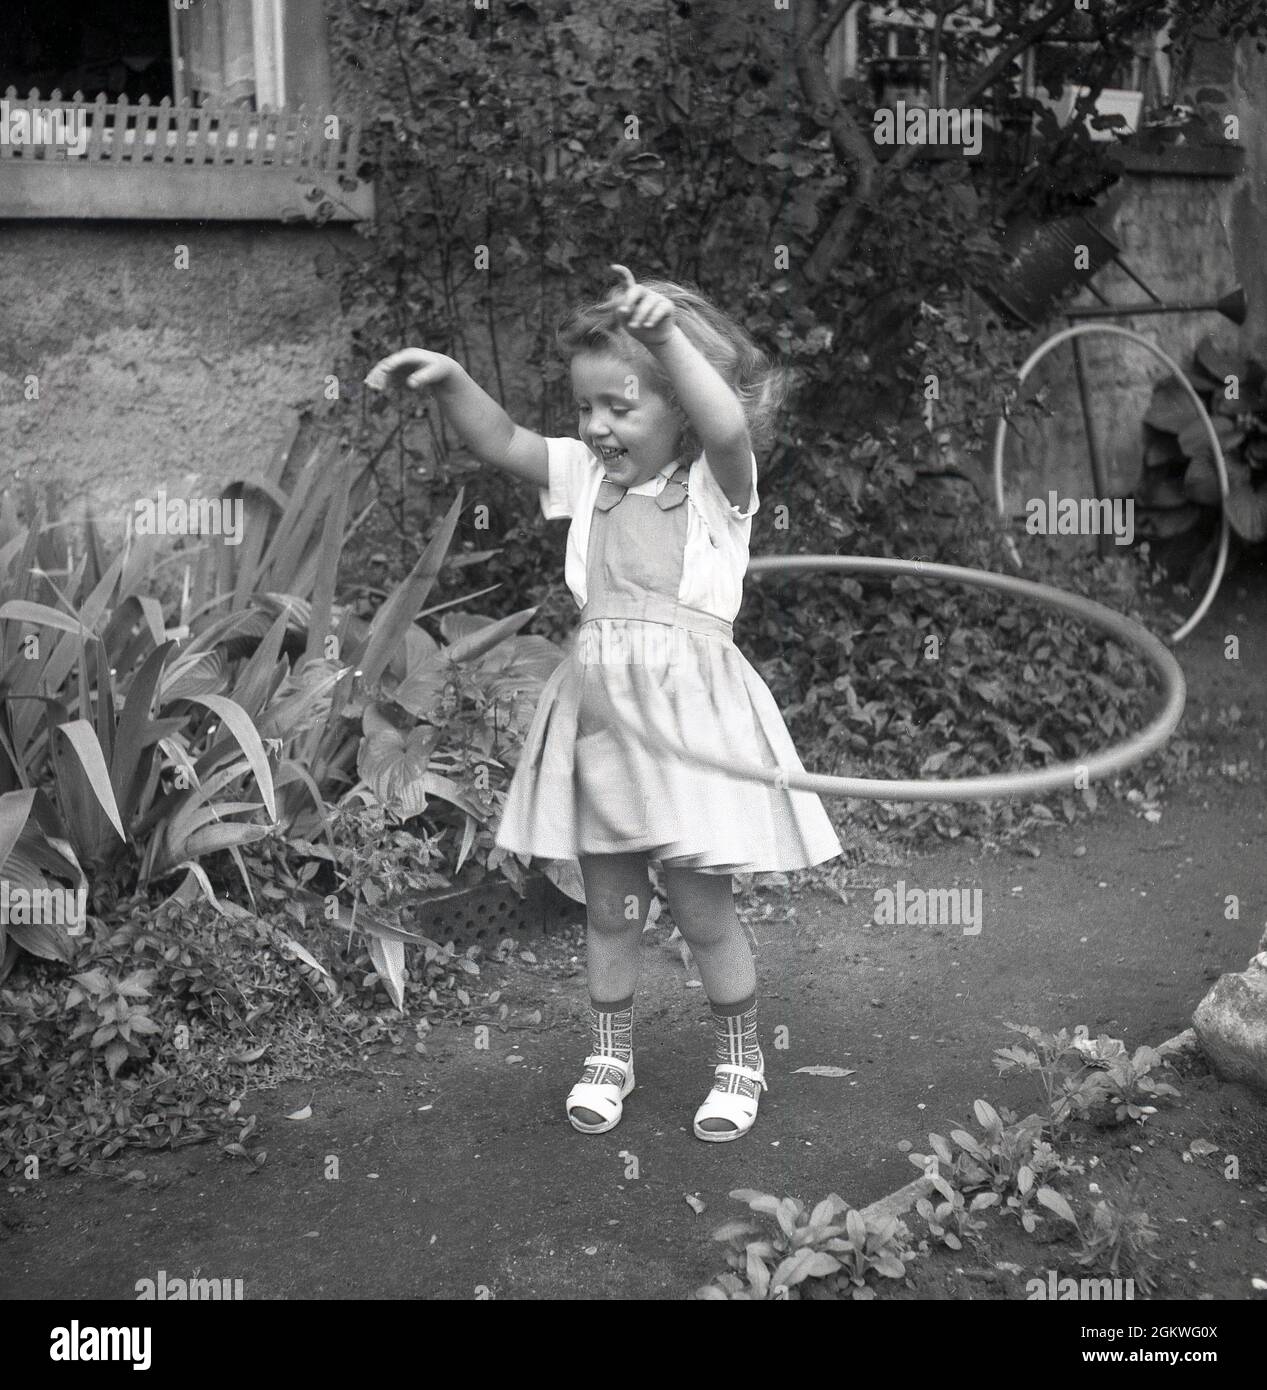 1960s, histórico, fuera en un camino de jardín, una niña jugando con un aro hula, un aro de juguete que ella está girando alrededor de su cintura, Alemania. Aunque un aro había estado en existencia y utilizado por los niños durante cientos de años - pero no conocido por ese nombre - fue sólo a finales de 1950s, cuando se introdujo la versión plástica, que la manía para ellos despegó. El aro hula - el nombre que viene se dice de hacer el hula, la danza en Hawaii - se convirtió en una moda mundial, con más de 100 millones vendidos en dos años. Los aros hula siguieron siendo un juguete popular para niños hasta finales de 1970s, principios de 80s. Foto de stock